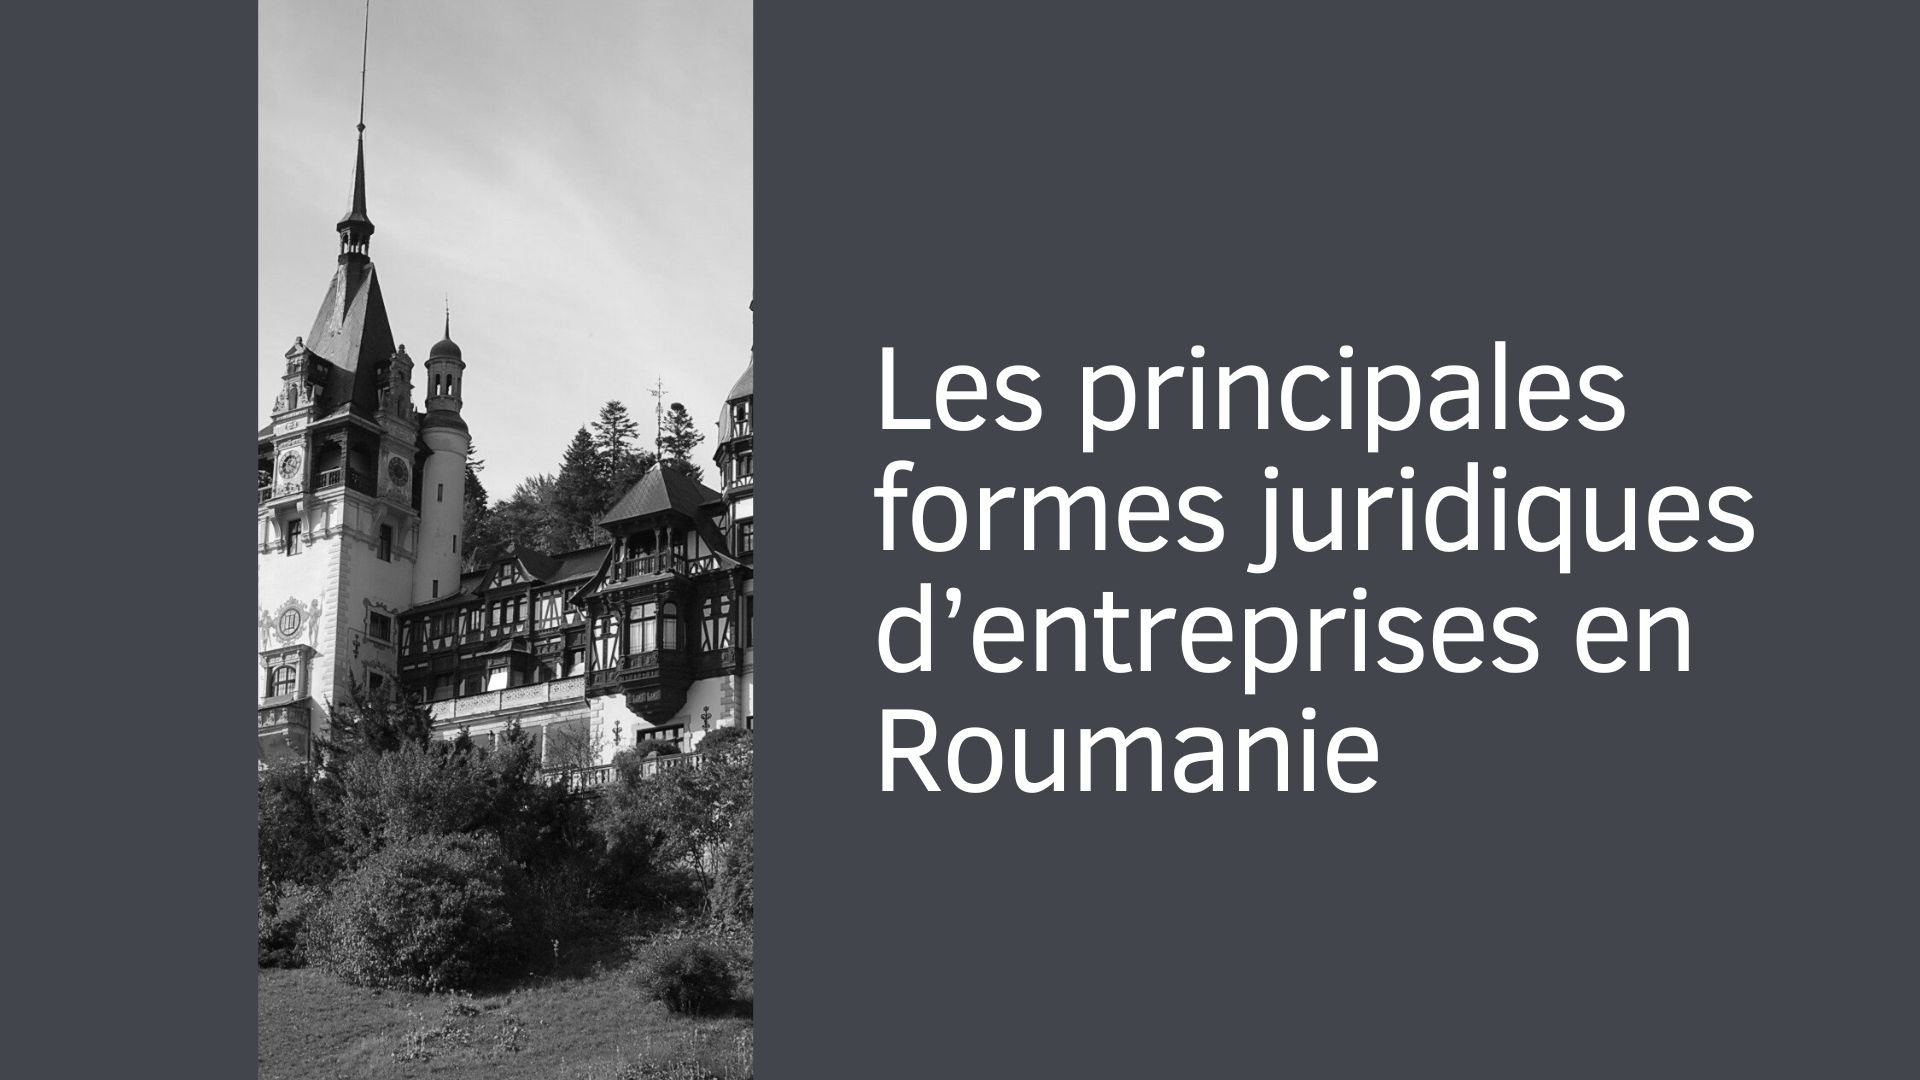 Les principales formes juridiques d’entreprises en Roumanie